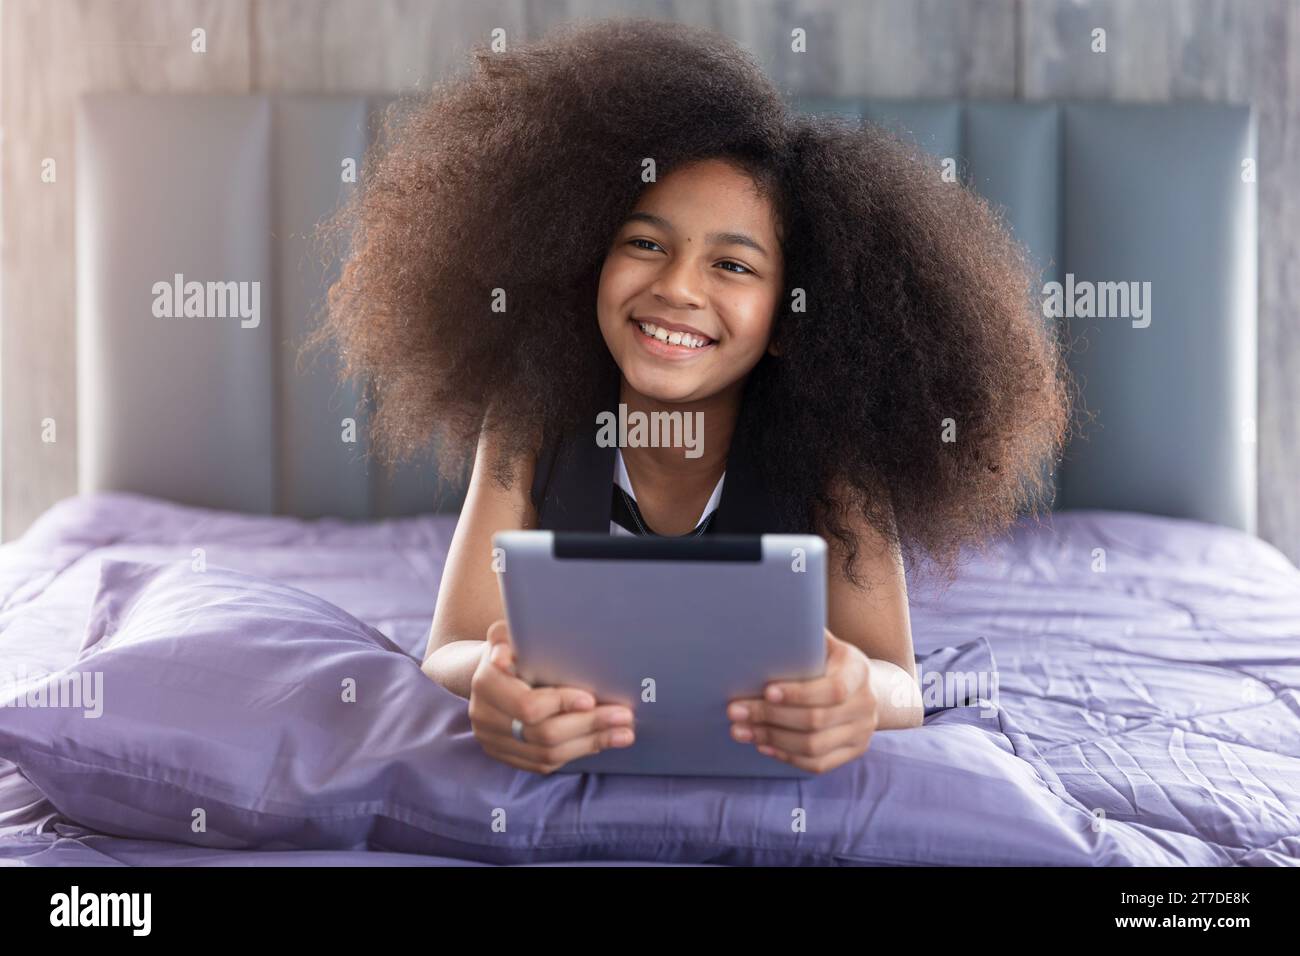 La bambina afro nera allegra e sorridente si trovava a letto con un tablet e un'istruzione di apprendimento a casa con un dispositivo digitale tecnologico. Foto Stock